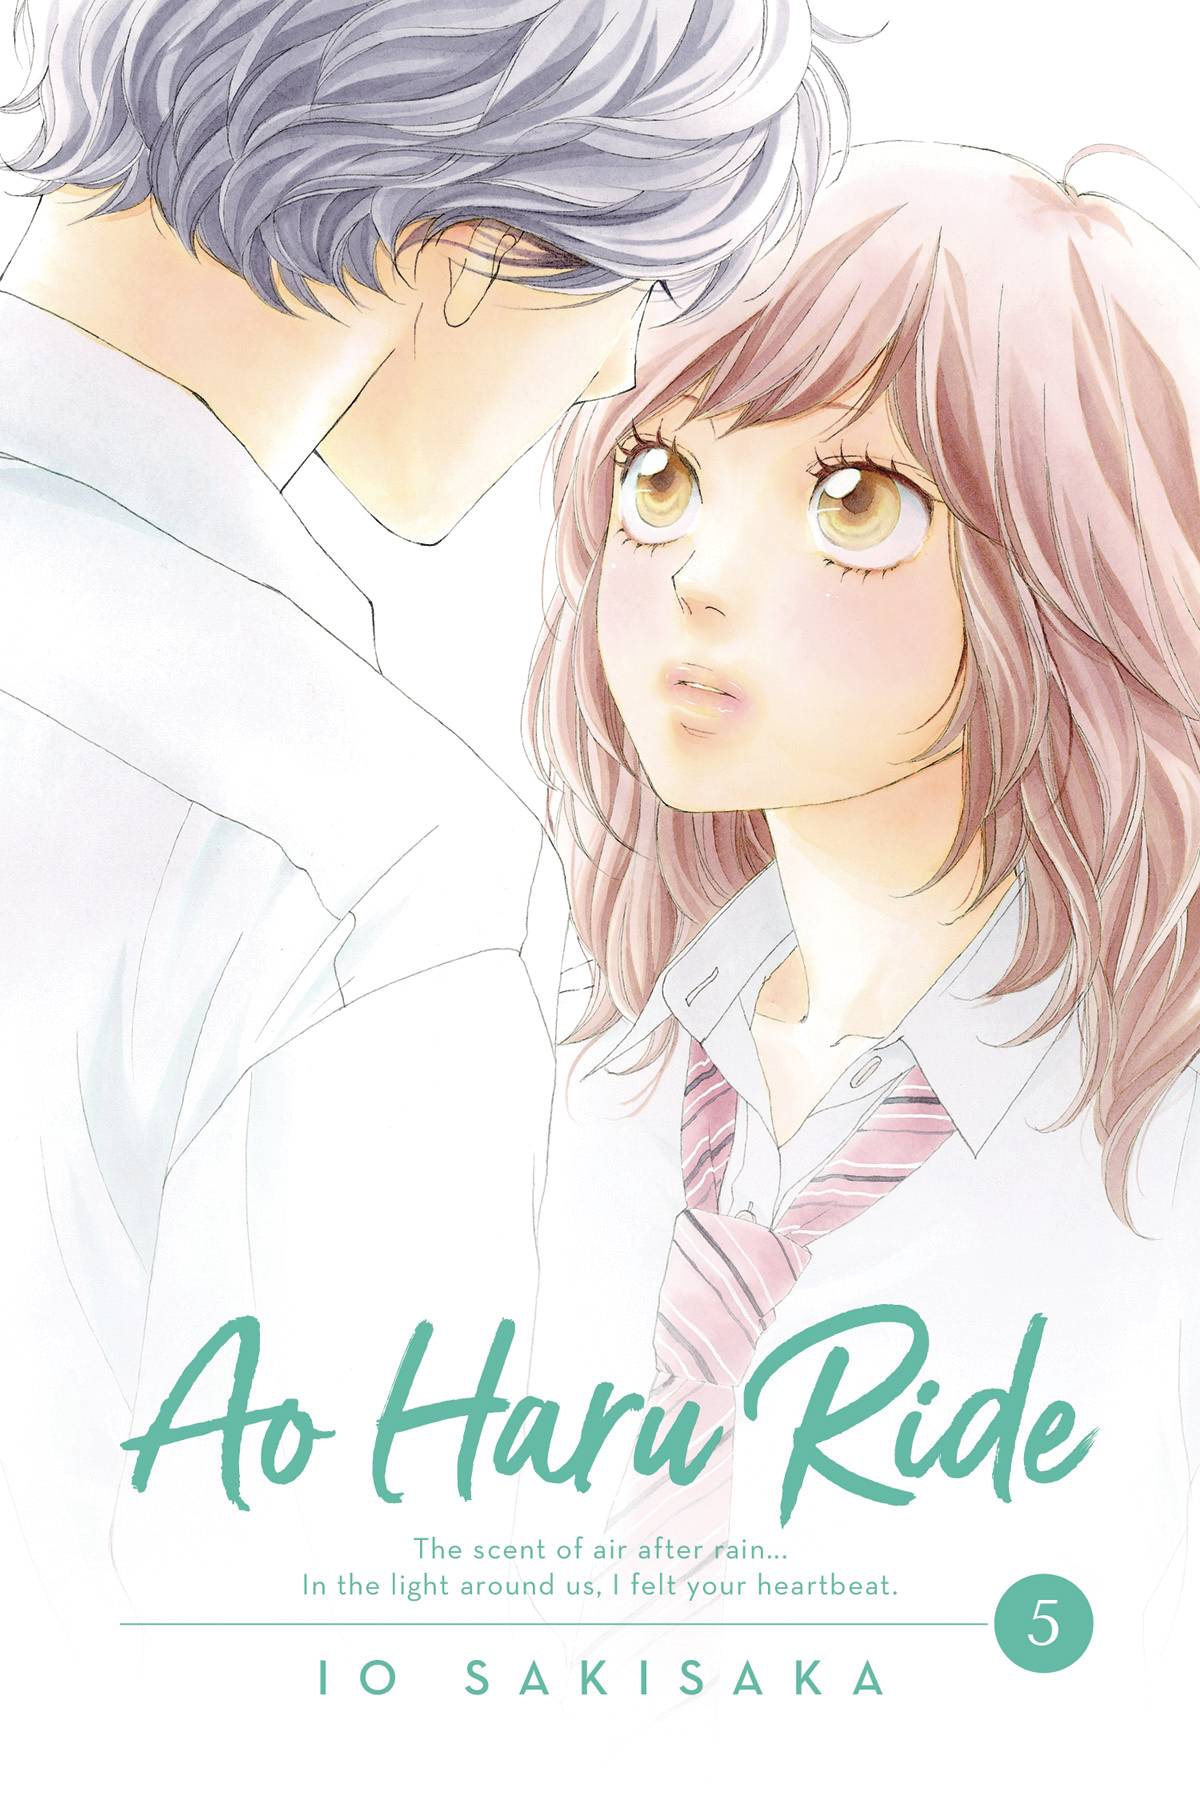 Ao Haru Ride Manga Manga Volume 5